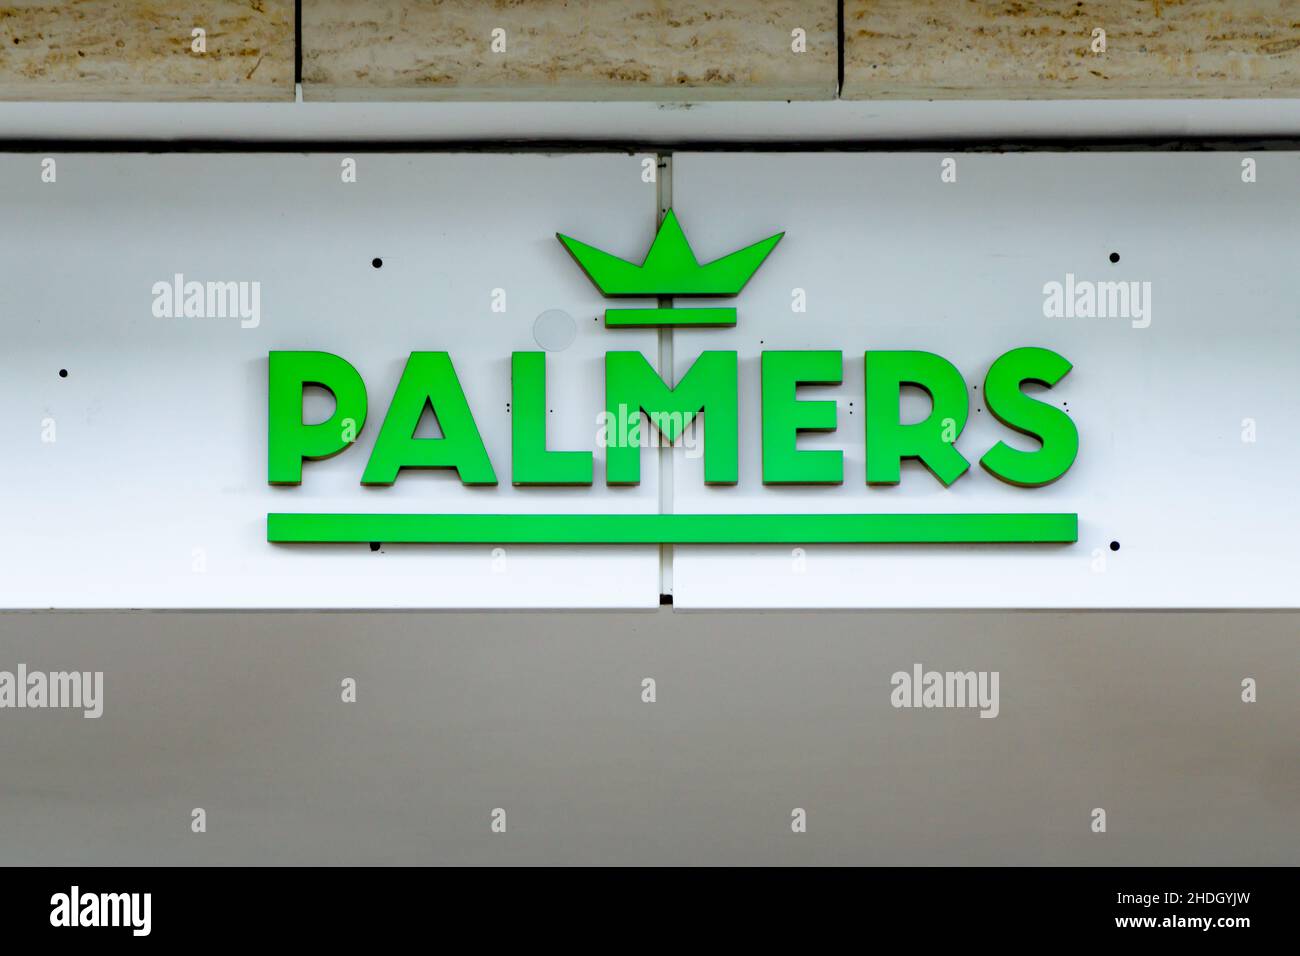 palmers Stockfoto